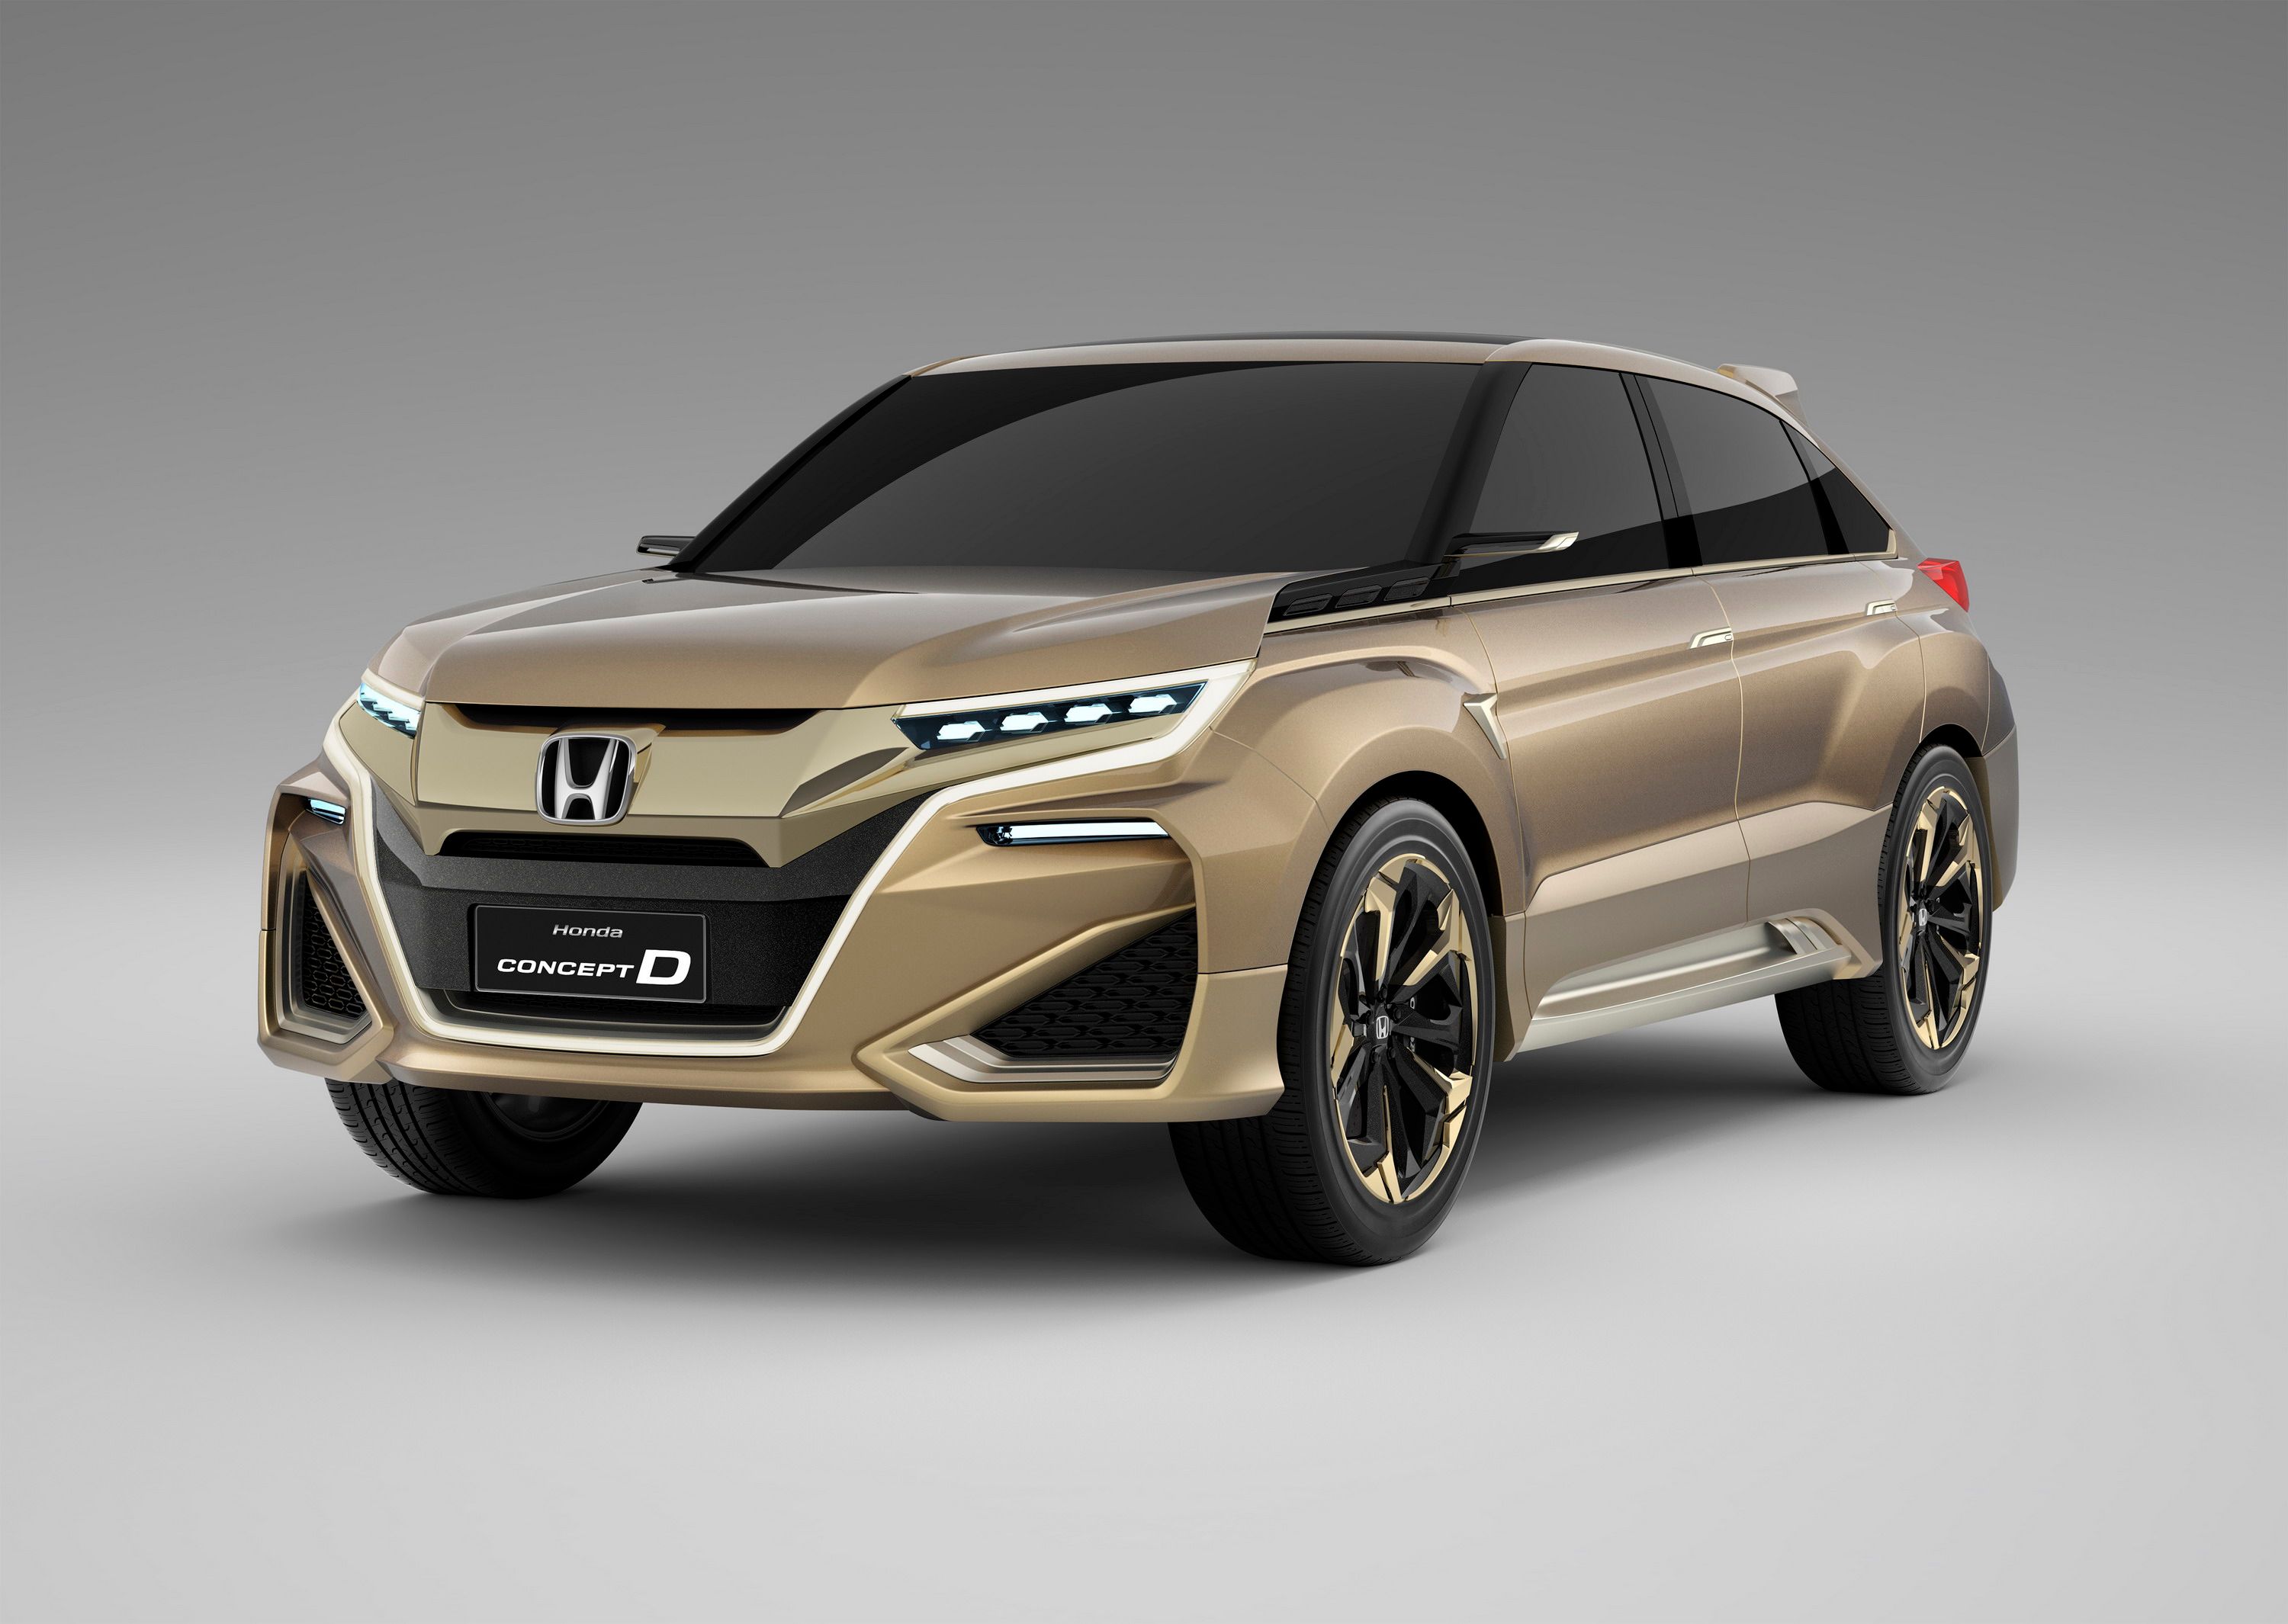 2015 Honda Concept D